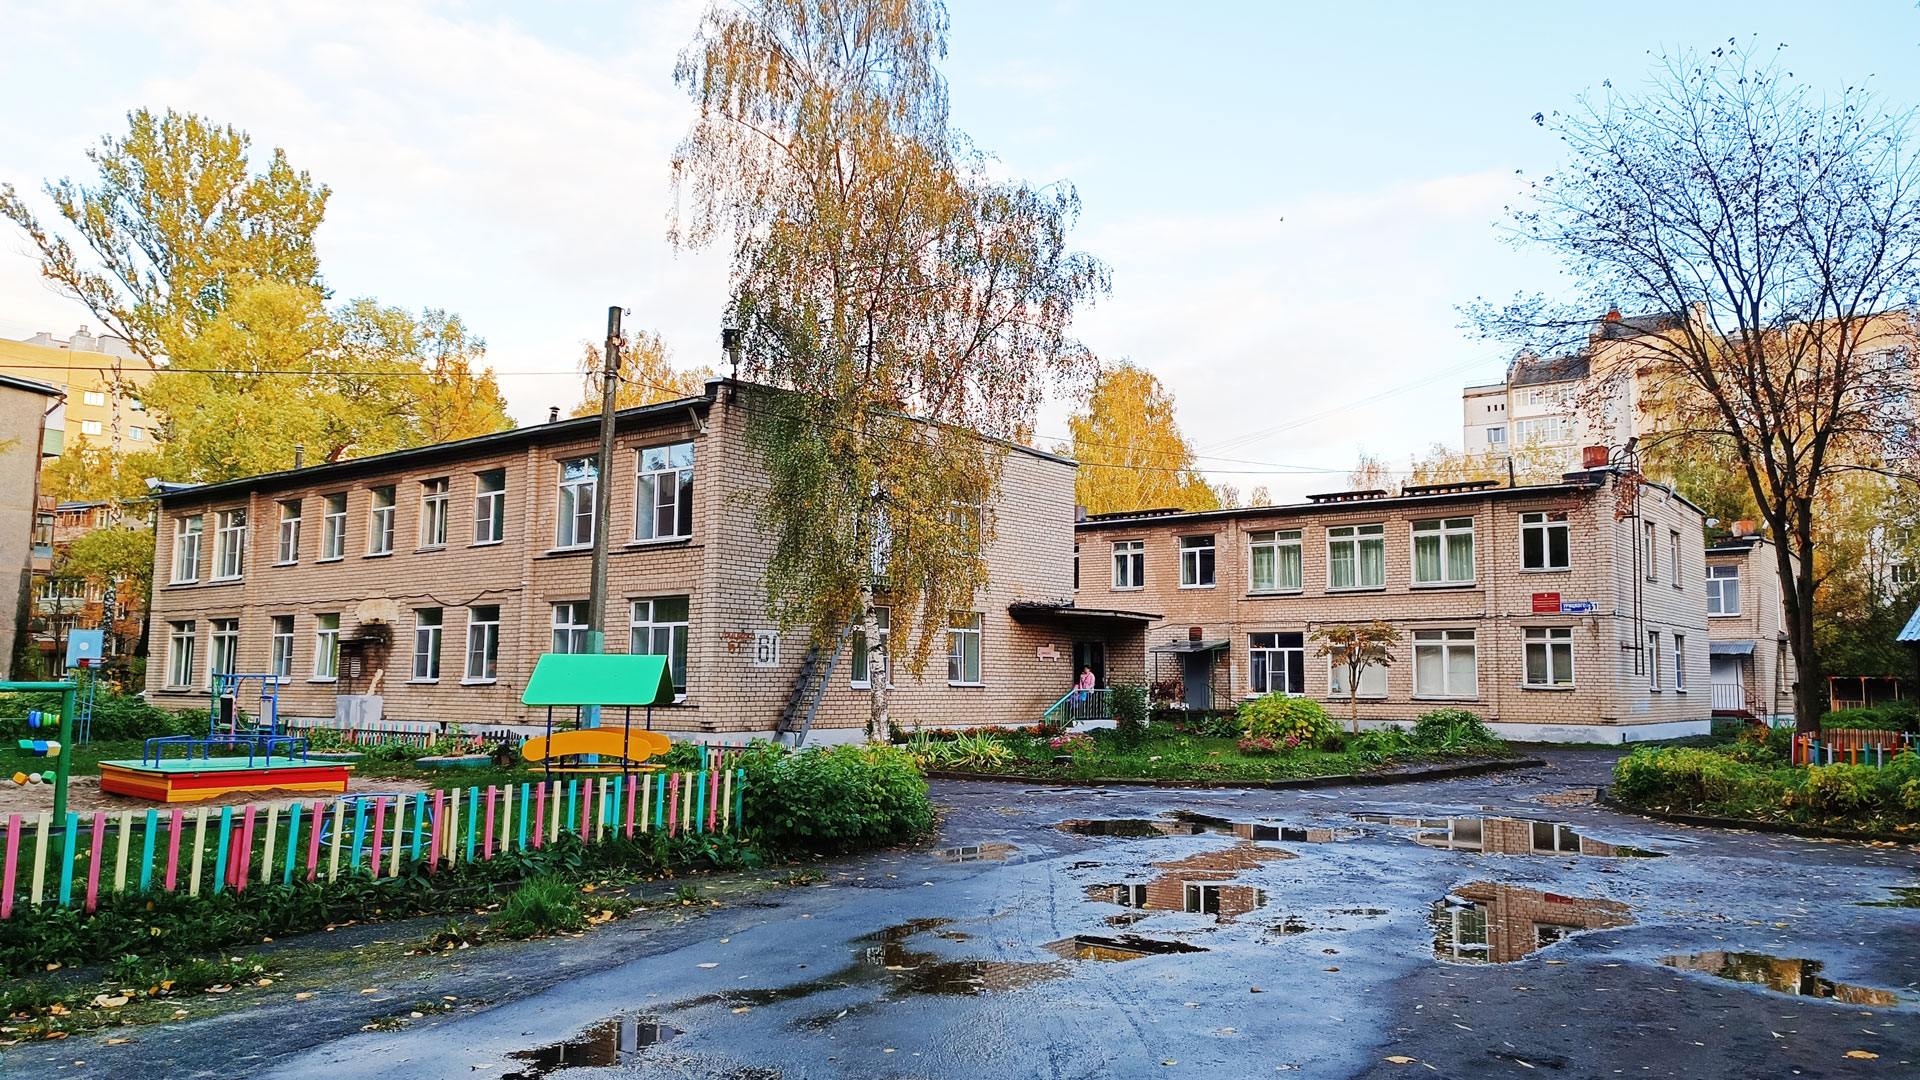 Детский сад 222 Ярославль: общий вид здания.